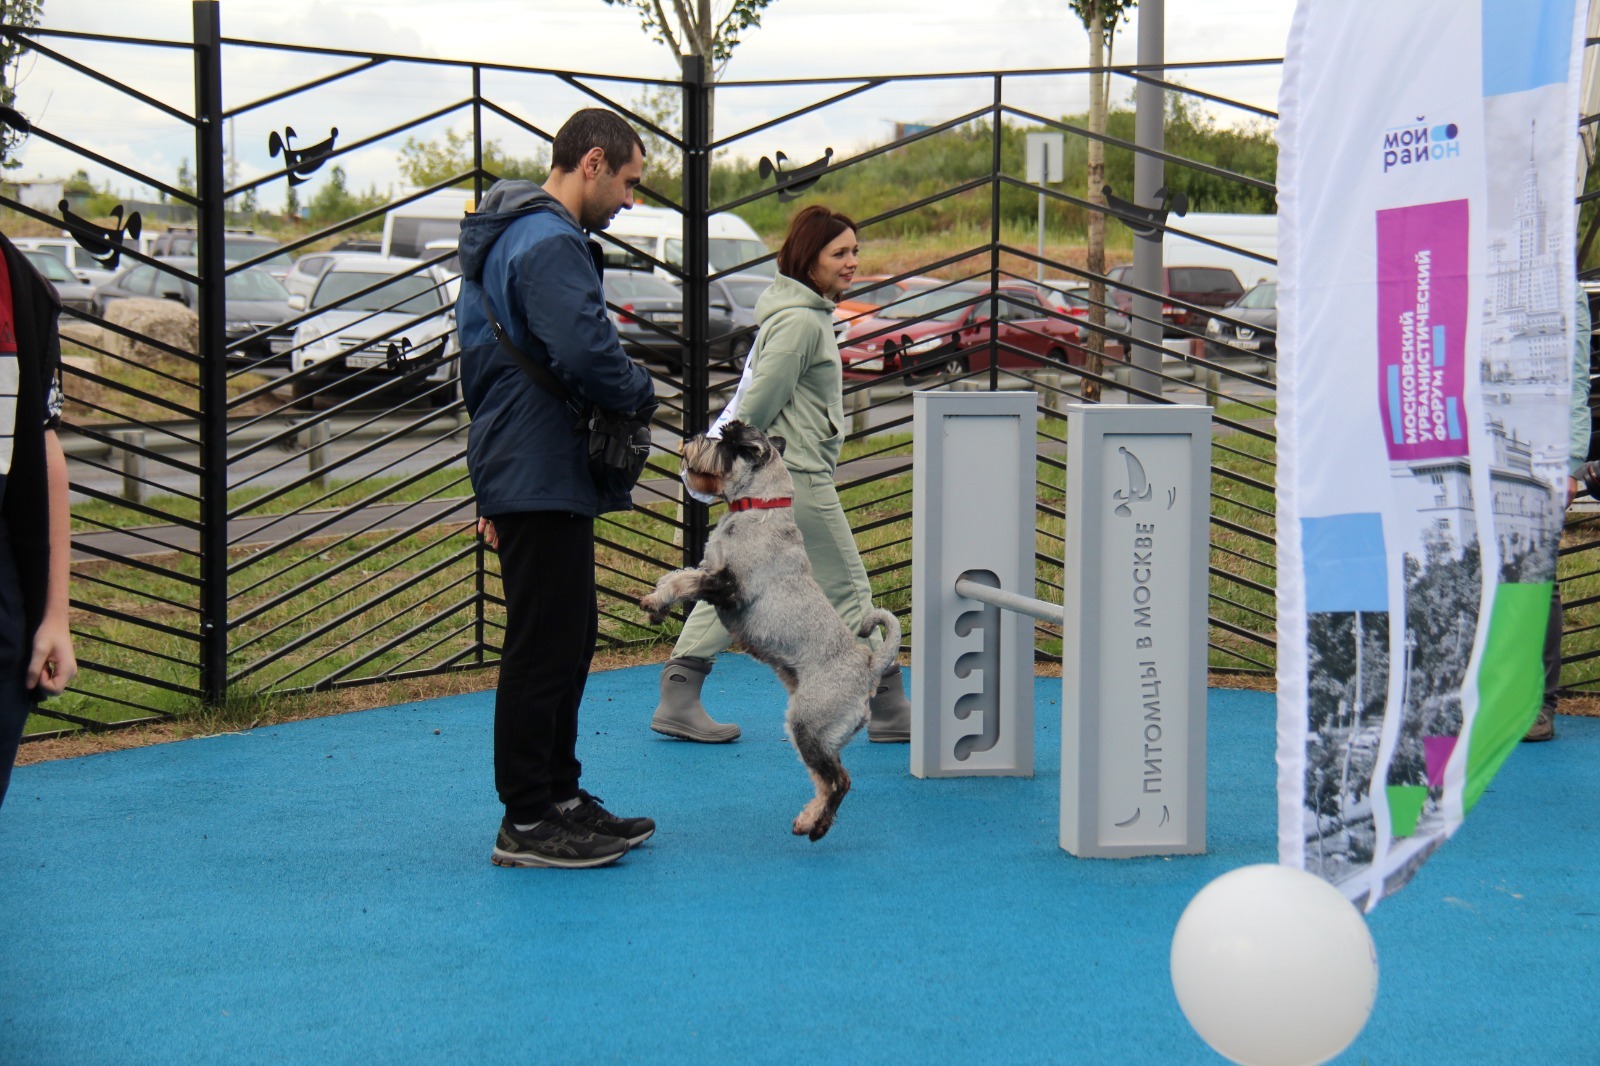 Открыта первая в этом году площадка для выгула собак в рамках проекта «Питомцы в Москве»